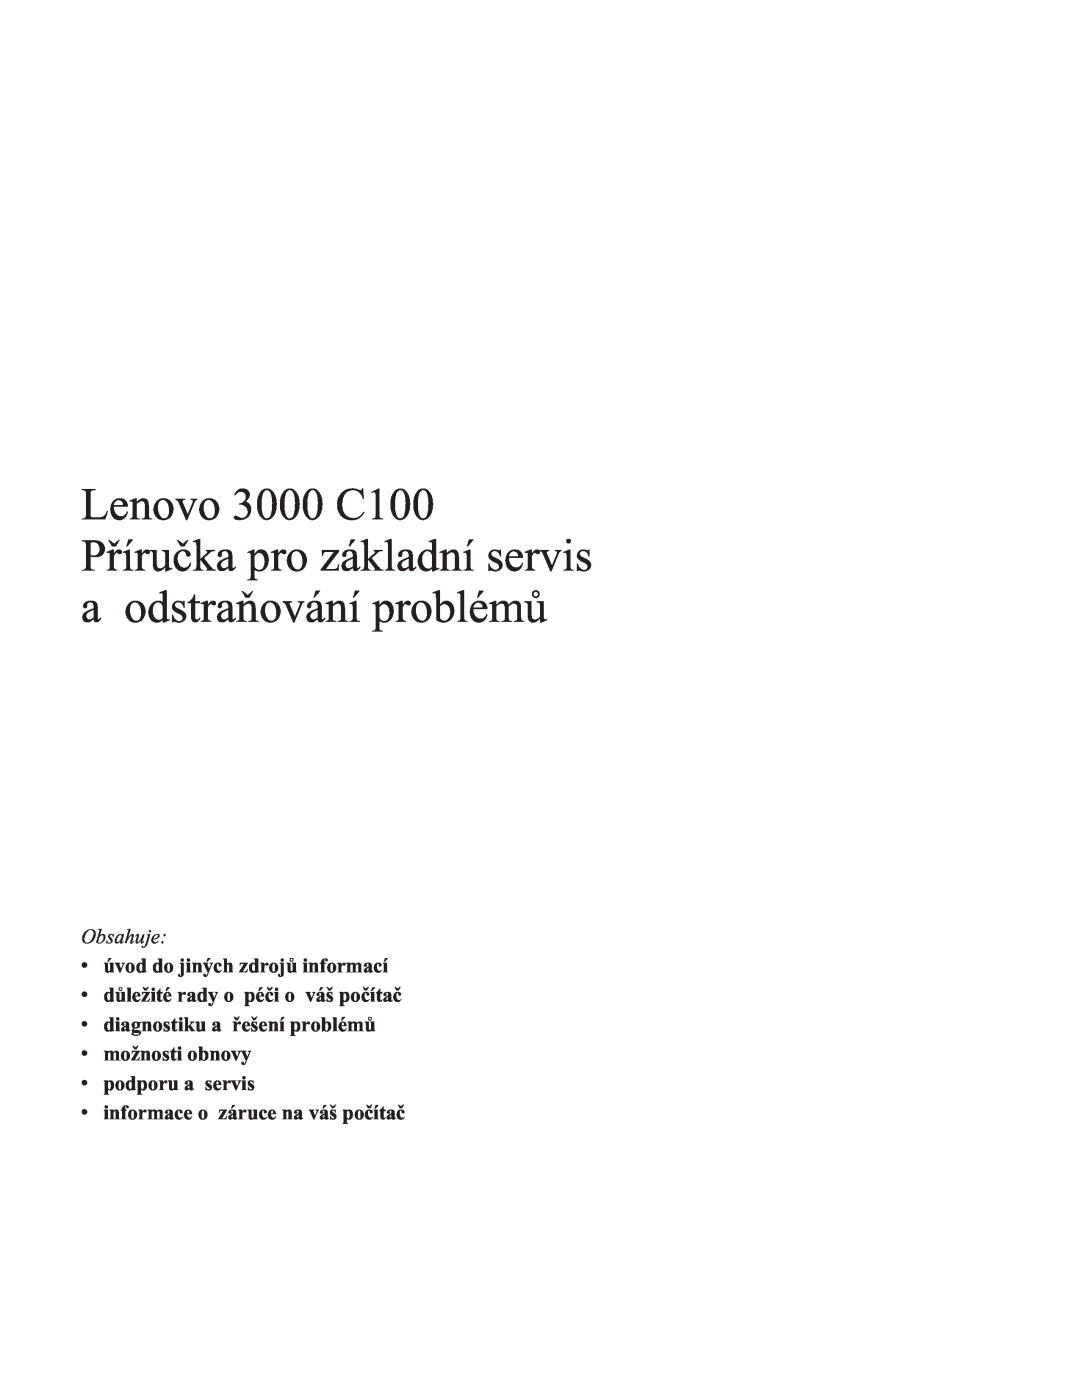 Lenovo C100 manual Obsahuje, vúvod do jiných zdrojů informací, vdůležité rady o péči o váš počítač, vpodporu a servis 